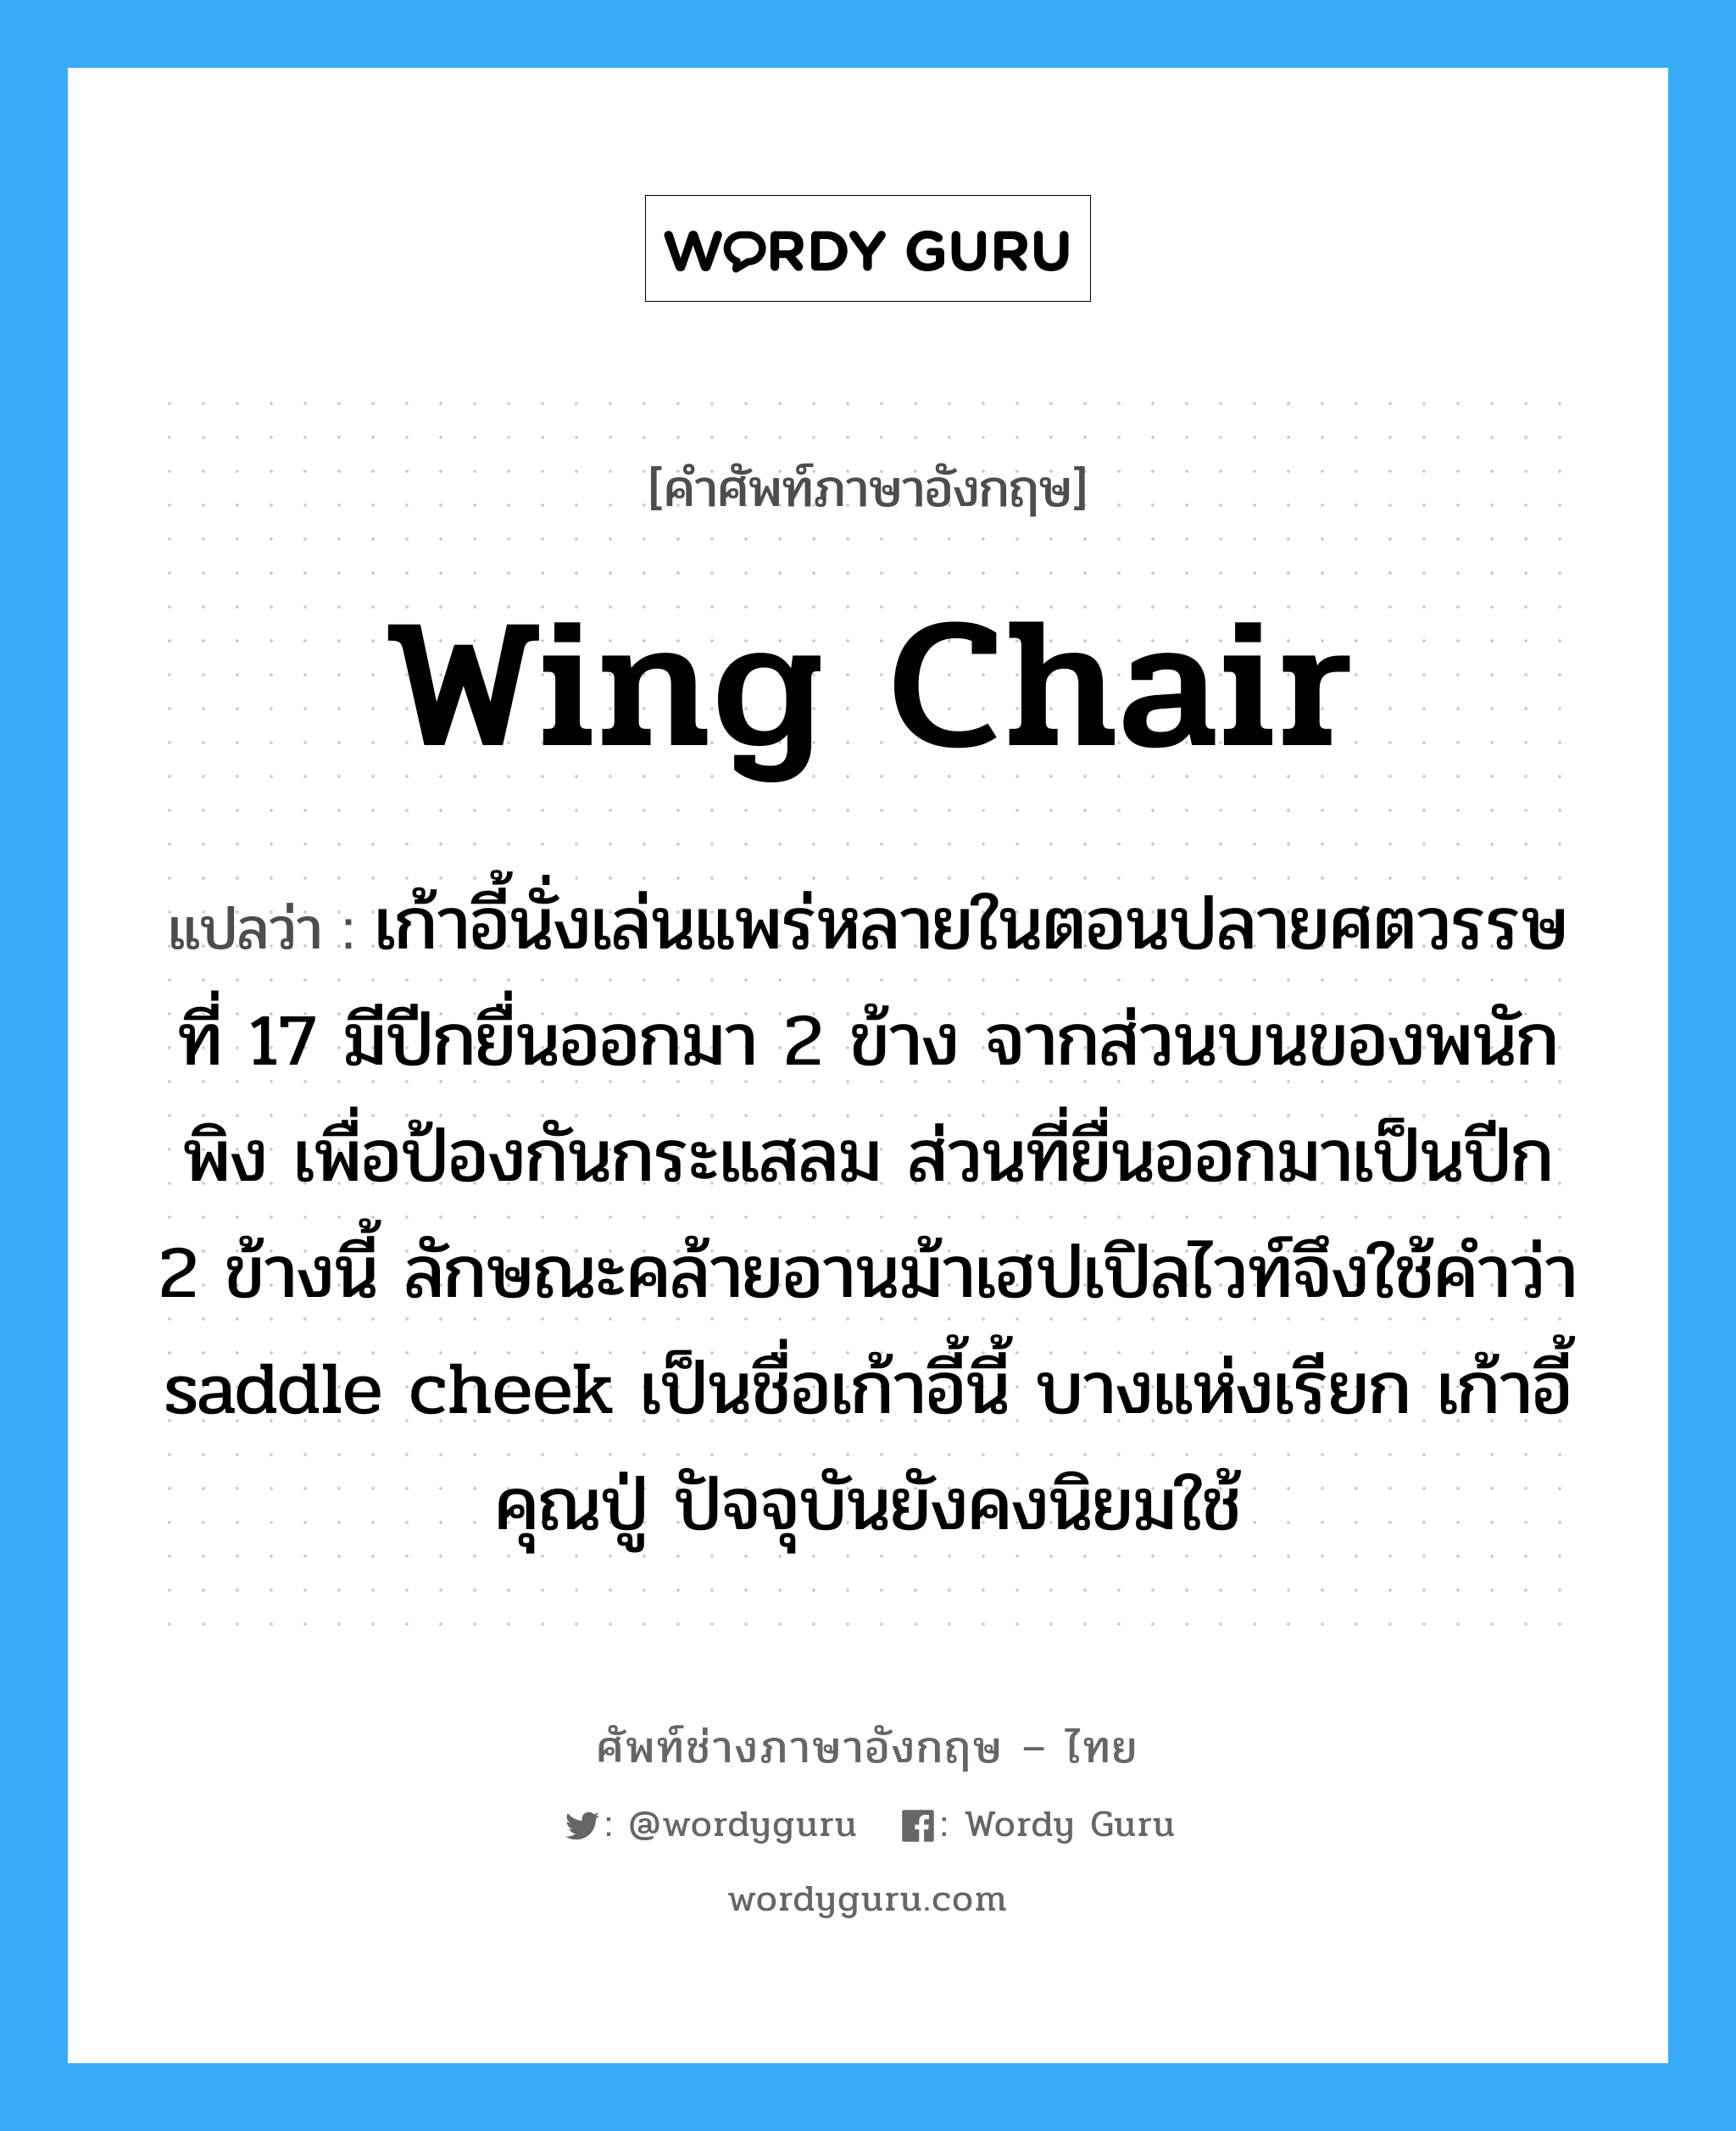 wing chair แปลว่า?, คำศัพท์ช่างภาษาอังกฤษ - ไทย wing chair คำศัพท์ภาษาอังกฤษ wing chair แปลว่า เก้าอี้นั่งเล่นแพร่หลายในตอนปลายศตวรรษที่ 17 มีปีกยื่นออกมา 2 ข้าง จากส่วนบนของพนักพิง เพื่อป้องกันกระแสลม ส่วนที่ยื่นออกมาเป็นปีก 2 ข้างนี้ ลักษณะคล้ายอานม้าเฮปเปิลไวท์จึงใช้คำว่า saddle cheek เป็นชื่อเก้าอี้นี้ บางแห่งเรียก เก้าอี้คุณปู่ ปัจจุบันยังคงนิยมใช้